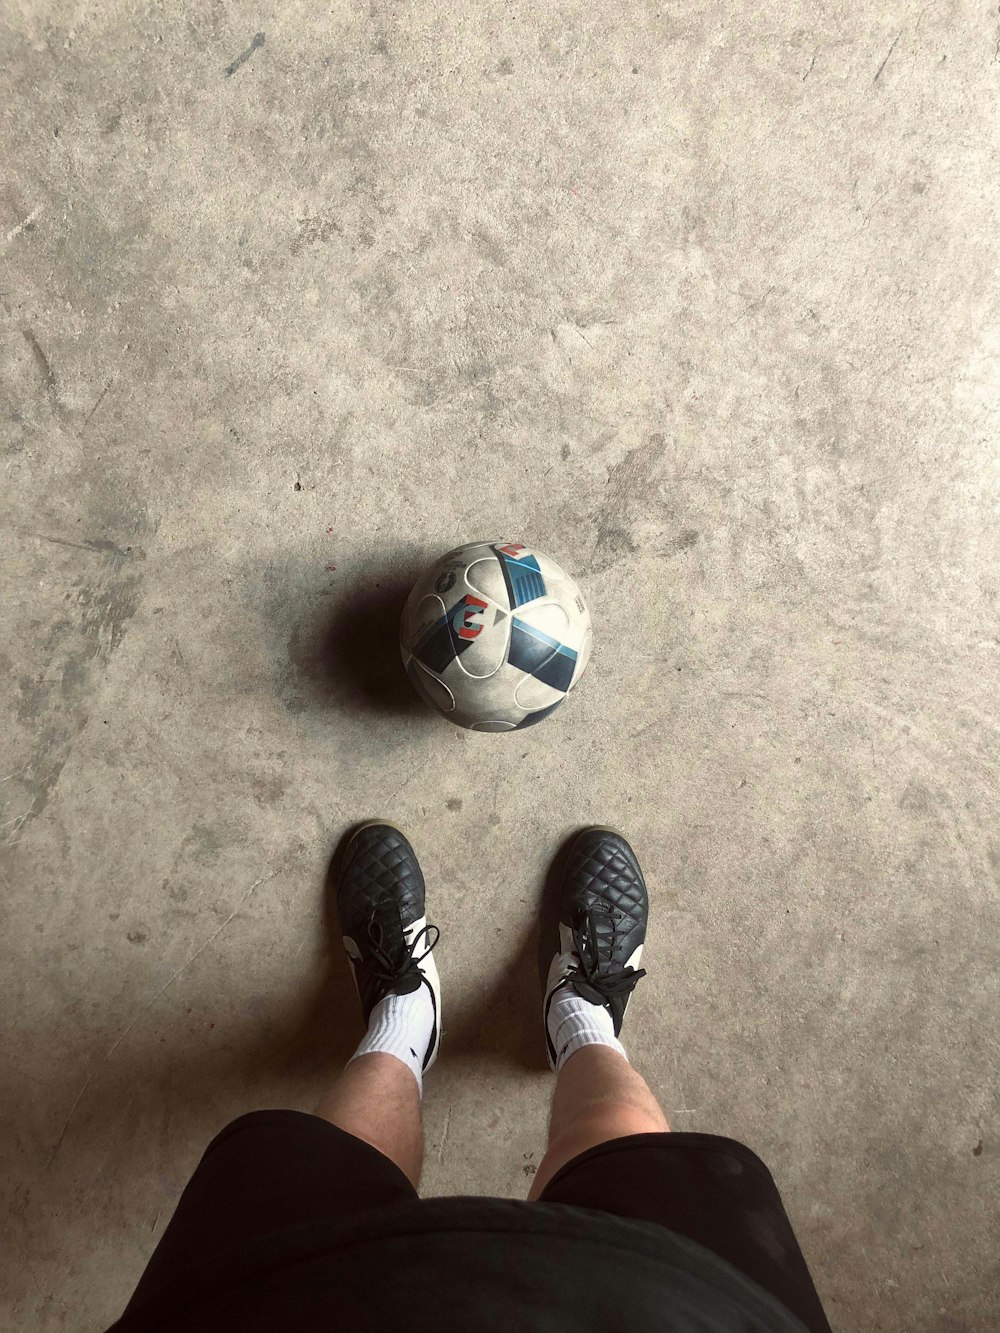 Una persona parada frente a un balón de fútbol